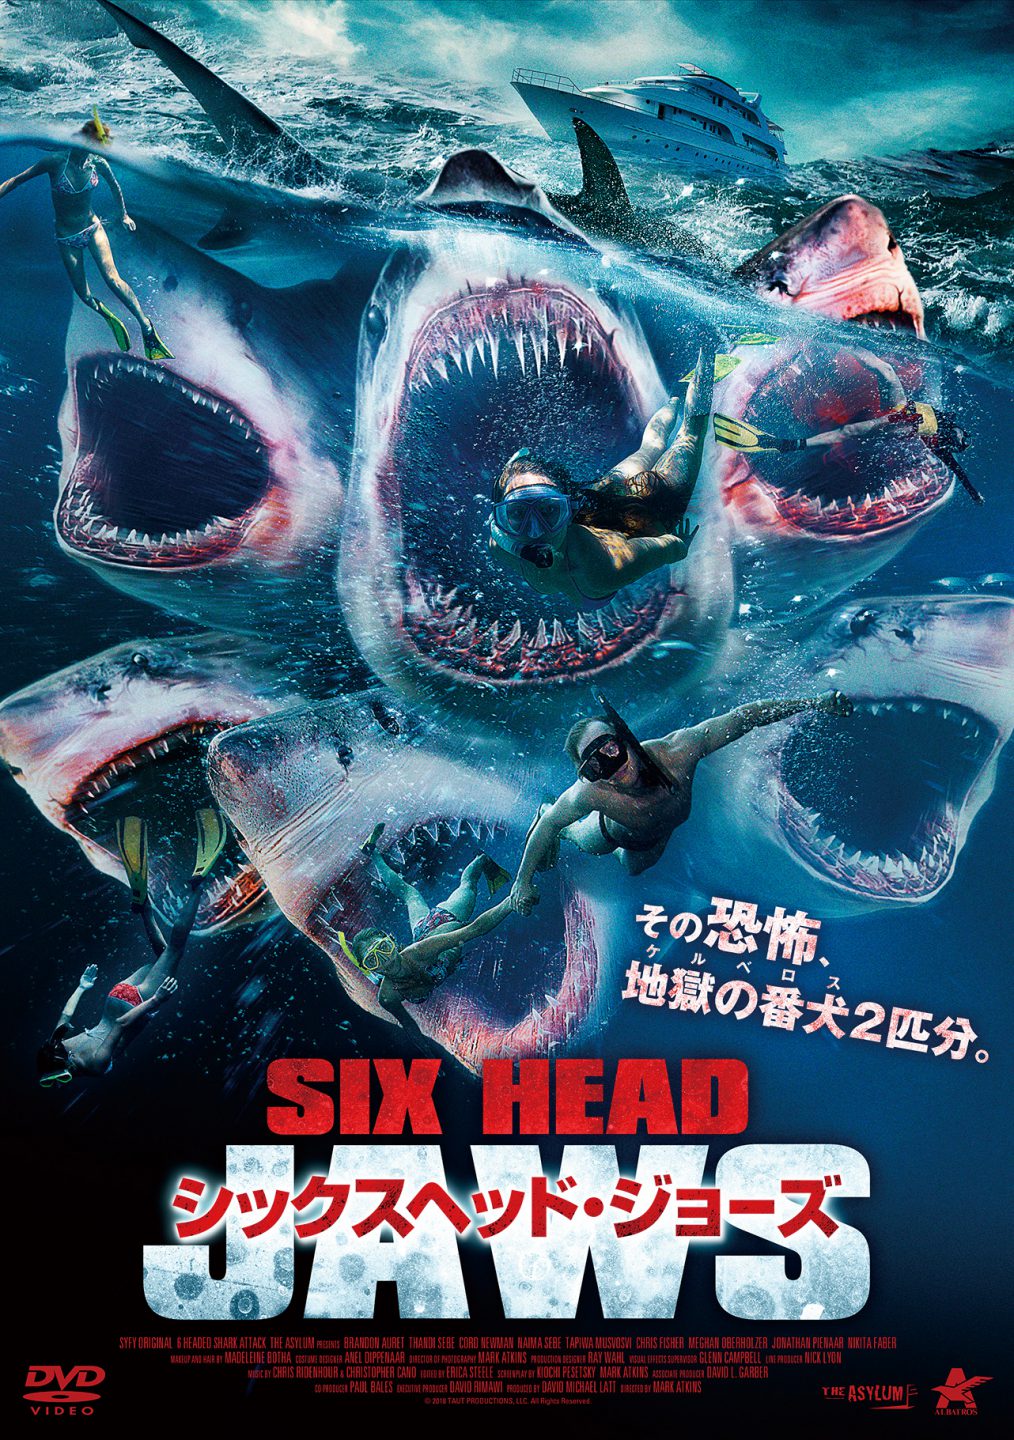 映画 サメ おすすめサメ映画16選 往年の名作からB級パニックムービーまで【2020最新版】